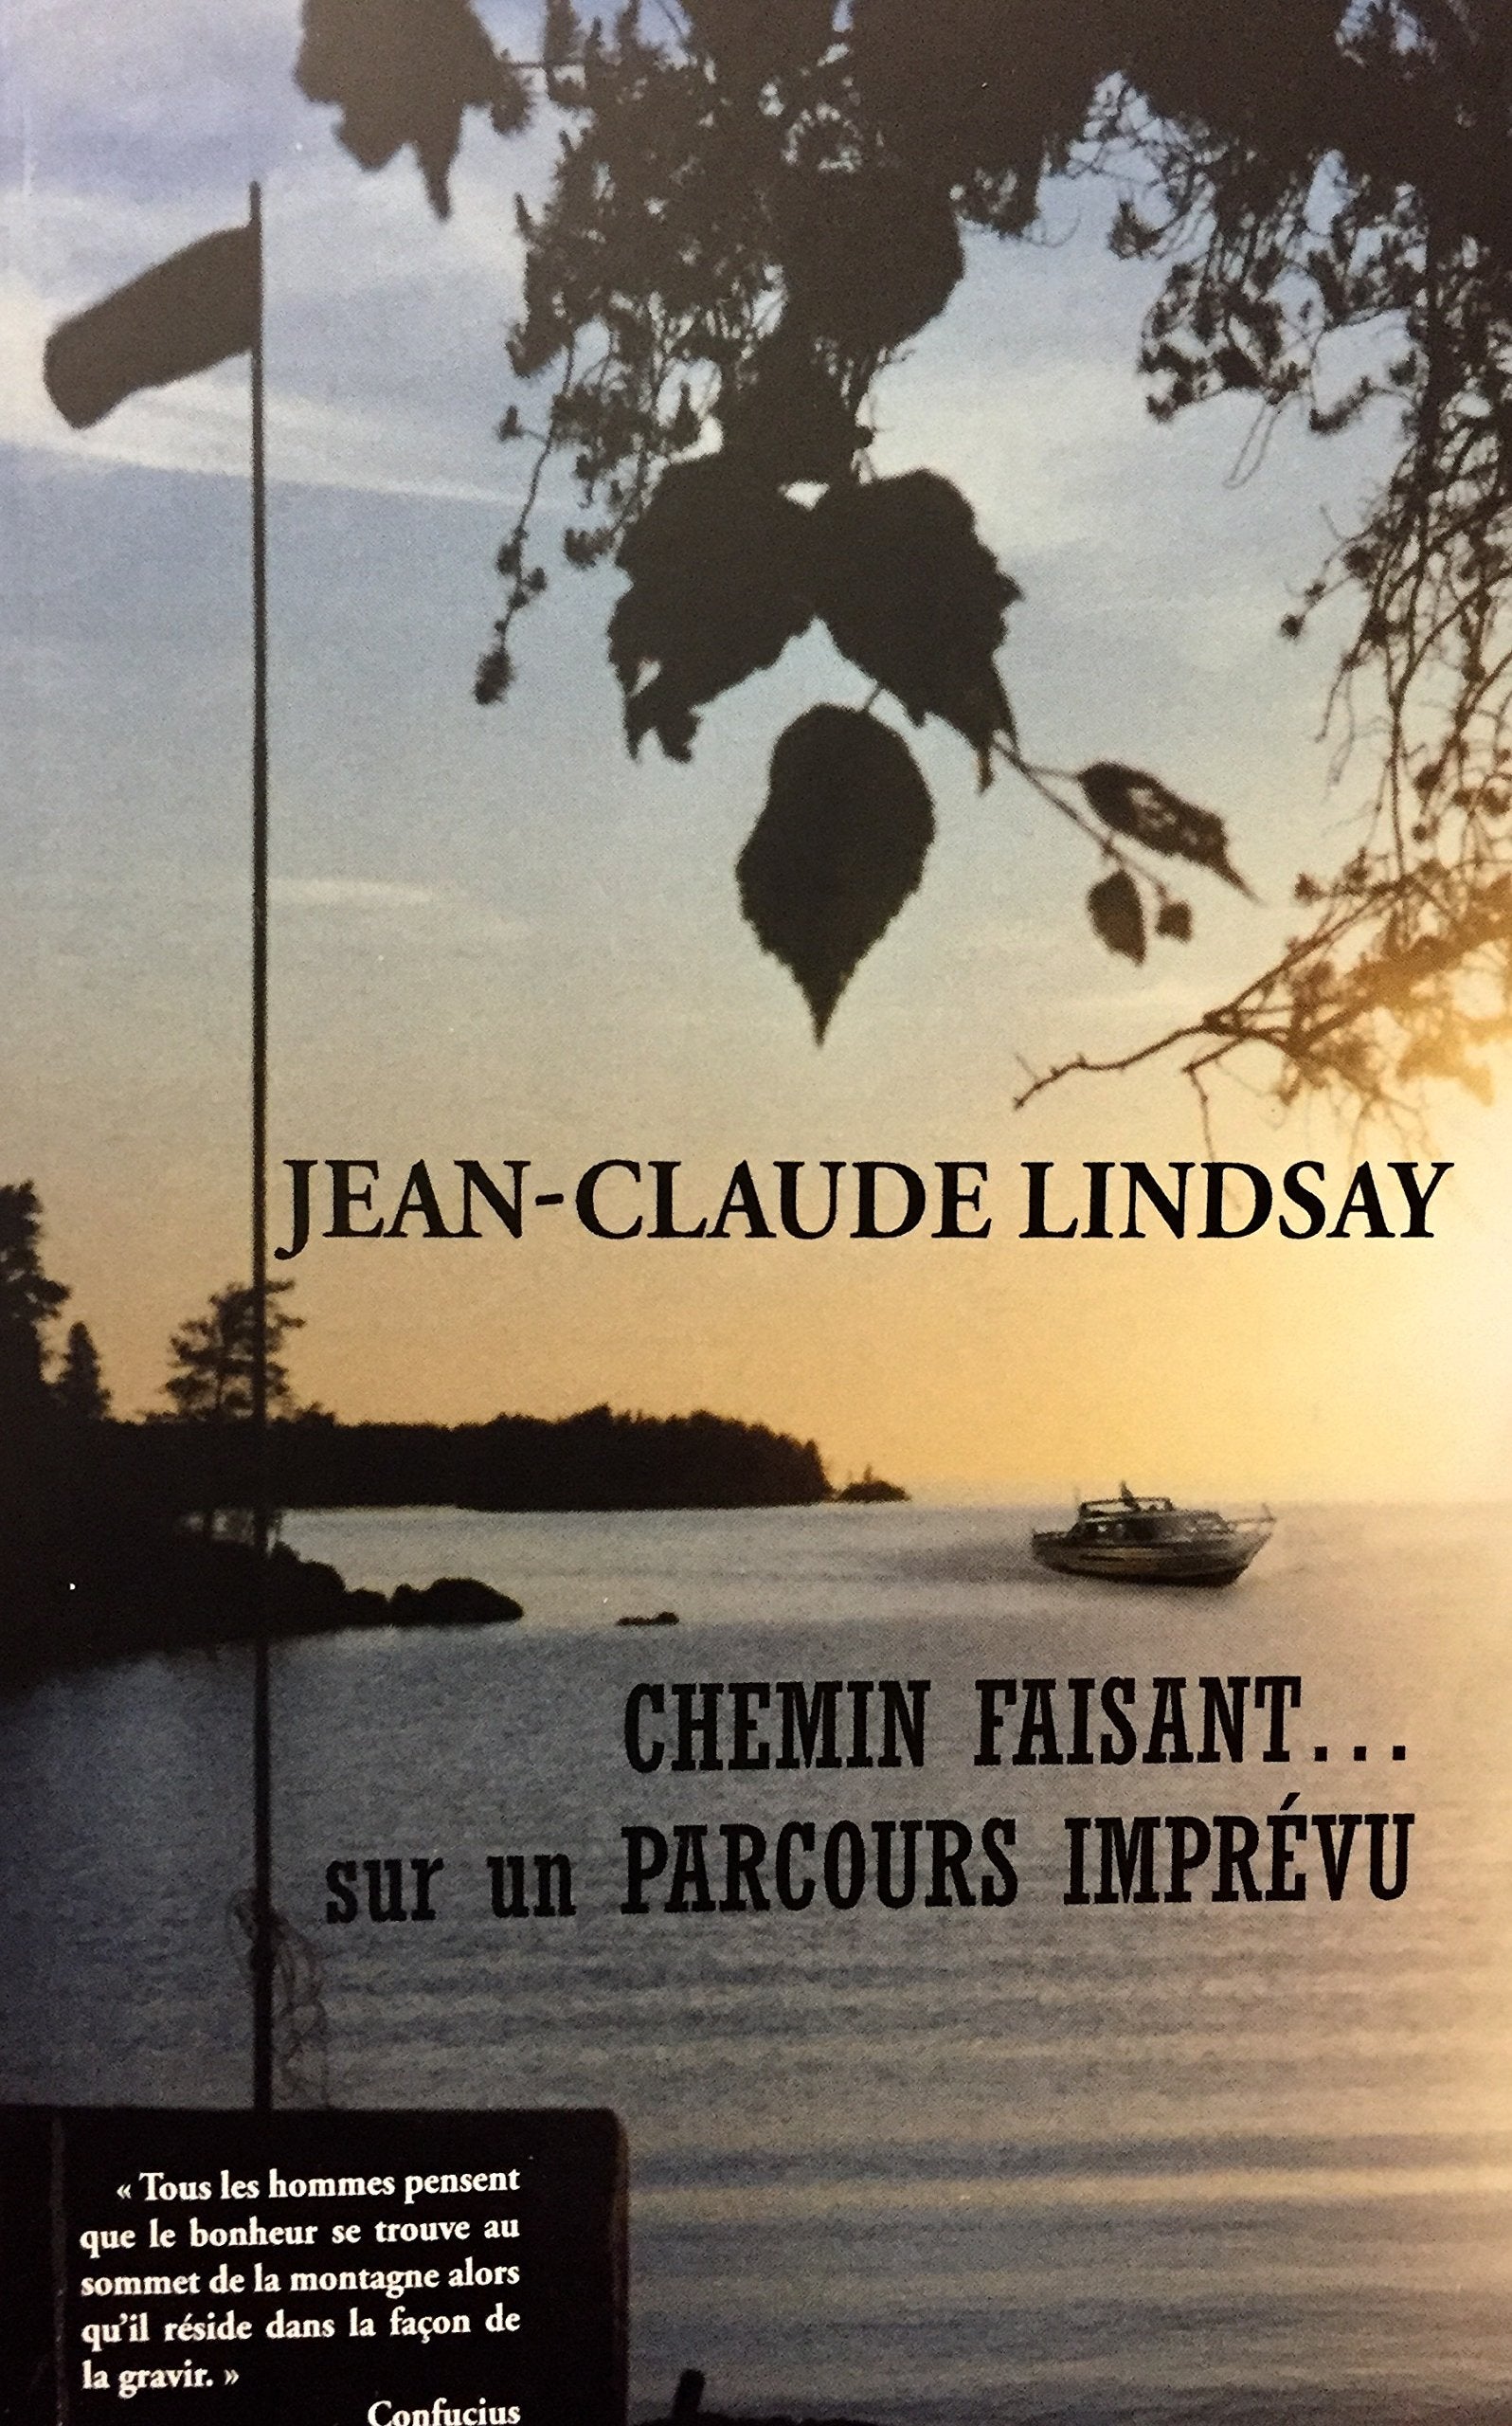 Livre ISBN 2922106632 Chemin faisant... sur un parcours imprévu (Jean-Claude Lindsay)